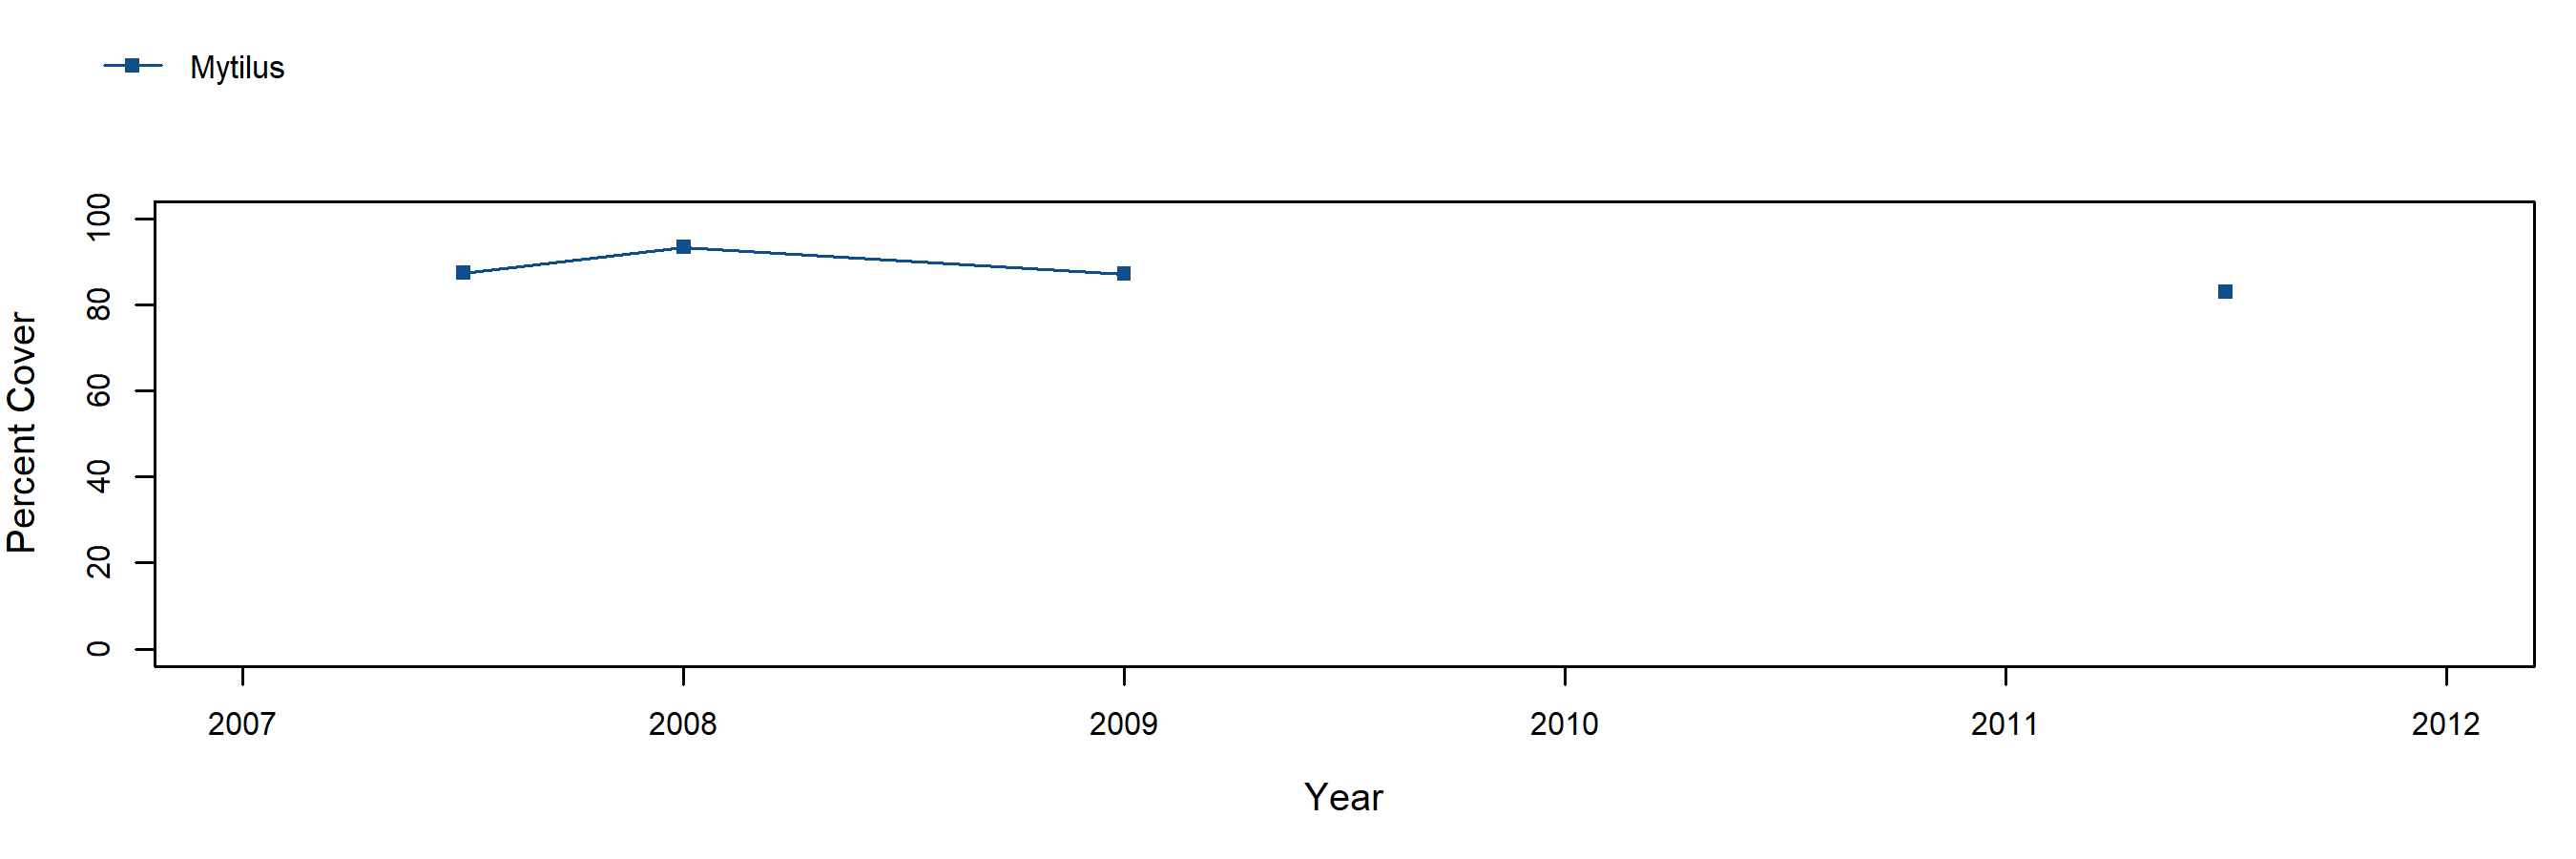 Davenport Landing Mytilus trend plot